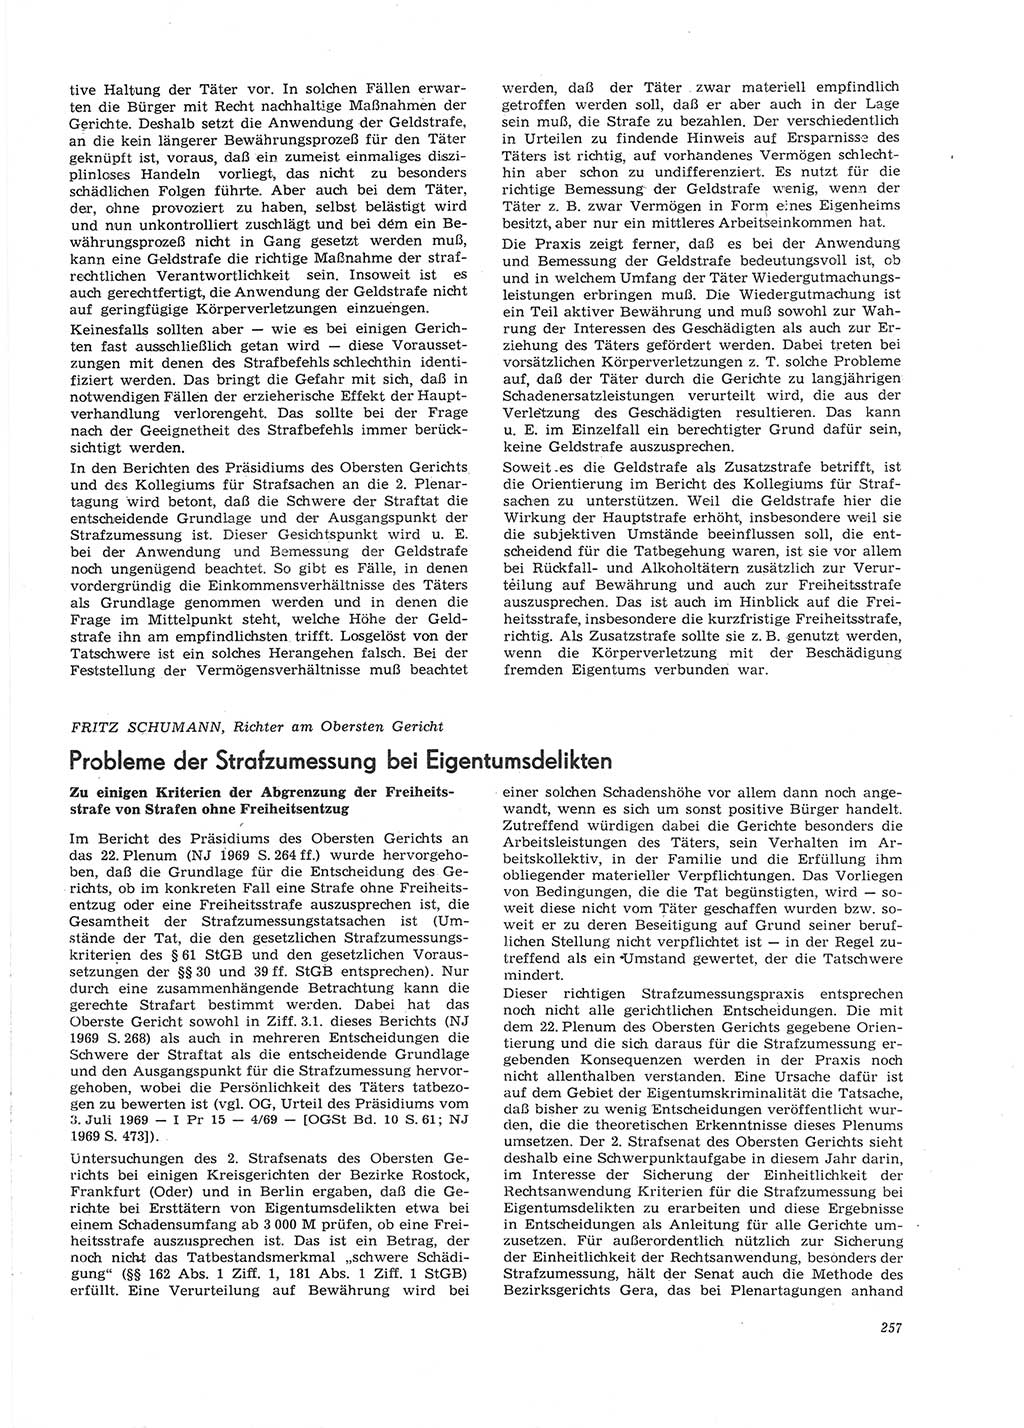 Neue Justiz (NJ), Zeitschrift für Recht und Rechtswissenschaft [Deutsche Demokratische Republik (DDR)], 26. Jahrgang 1972, Seite 257 (NJ DDR 1972, S. 257)